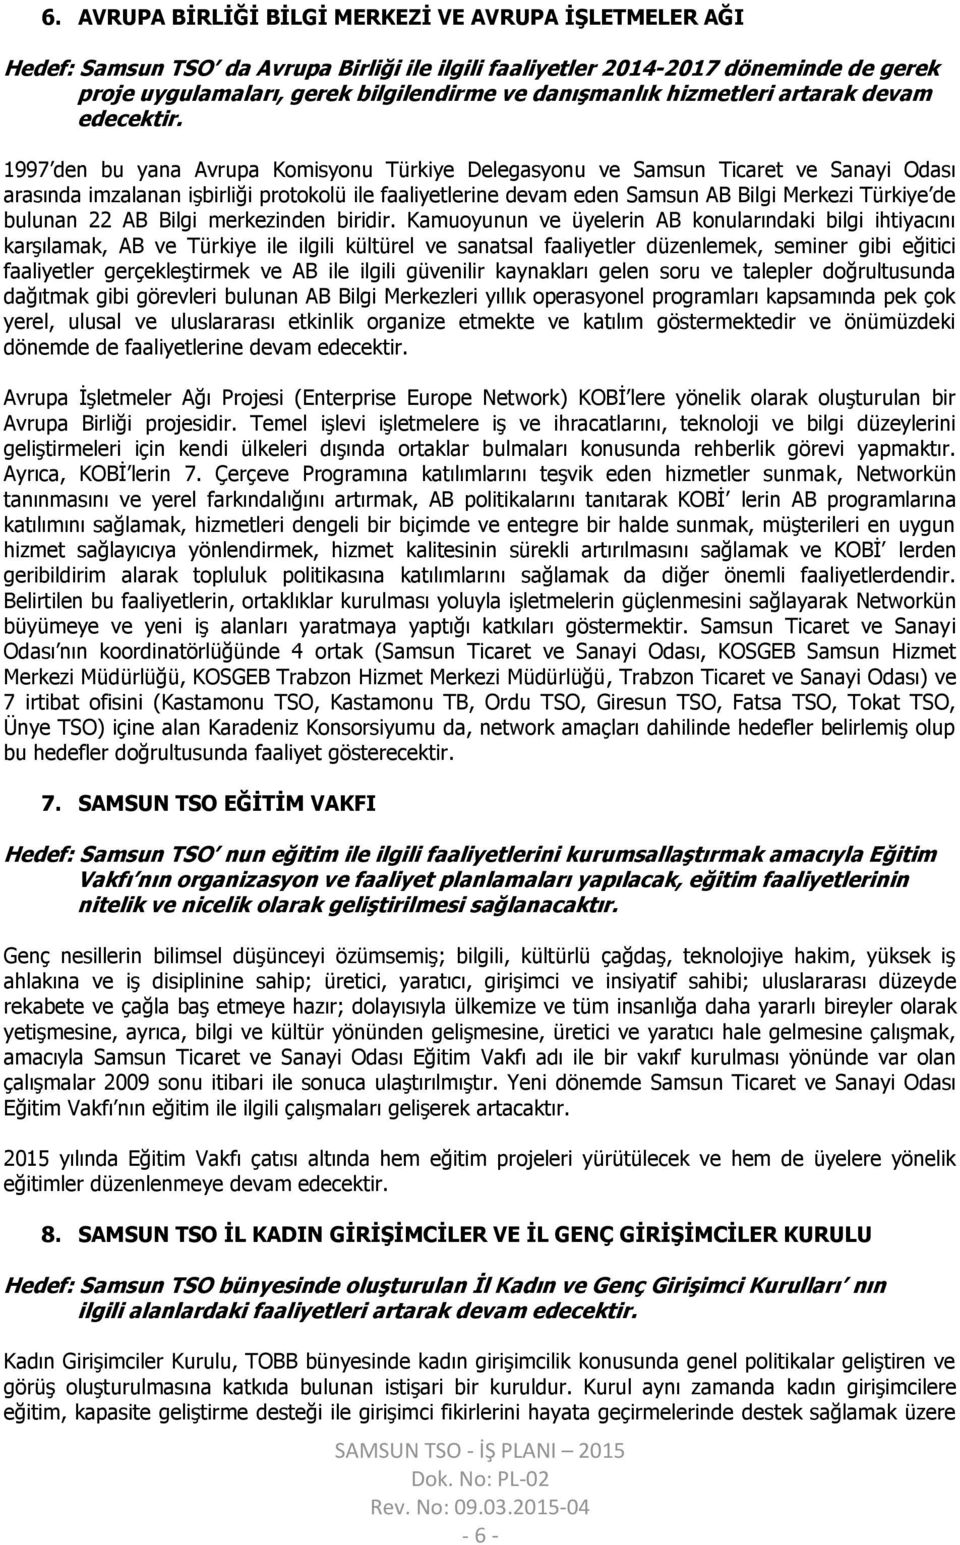 1997 den bu yana Avrupa Komisyonu Türkiye Delegasyonu ve Samsun Ticaret ve Sanayi Odası arasında imzalanan işbirliği protokolü ile faaliyetlerine devam eden Samsun AB Bilgi Merkezi Türkiye de bulunan